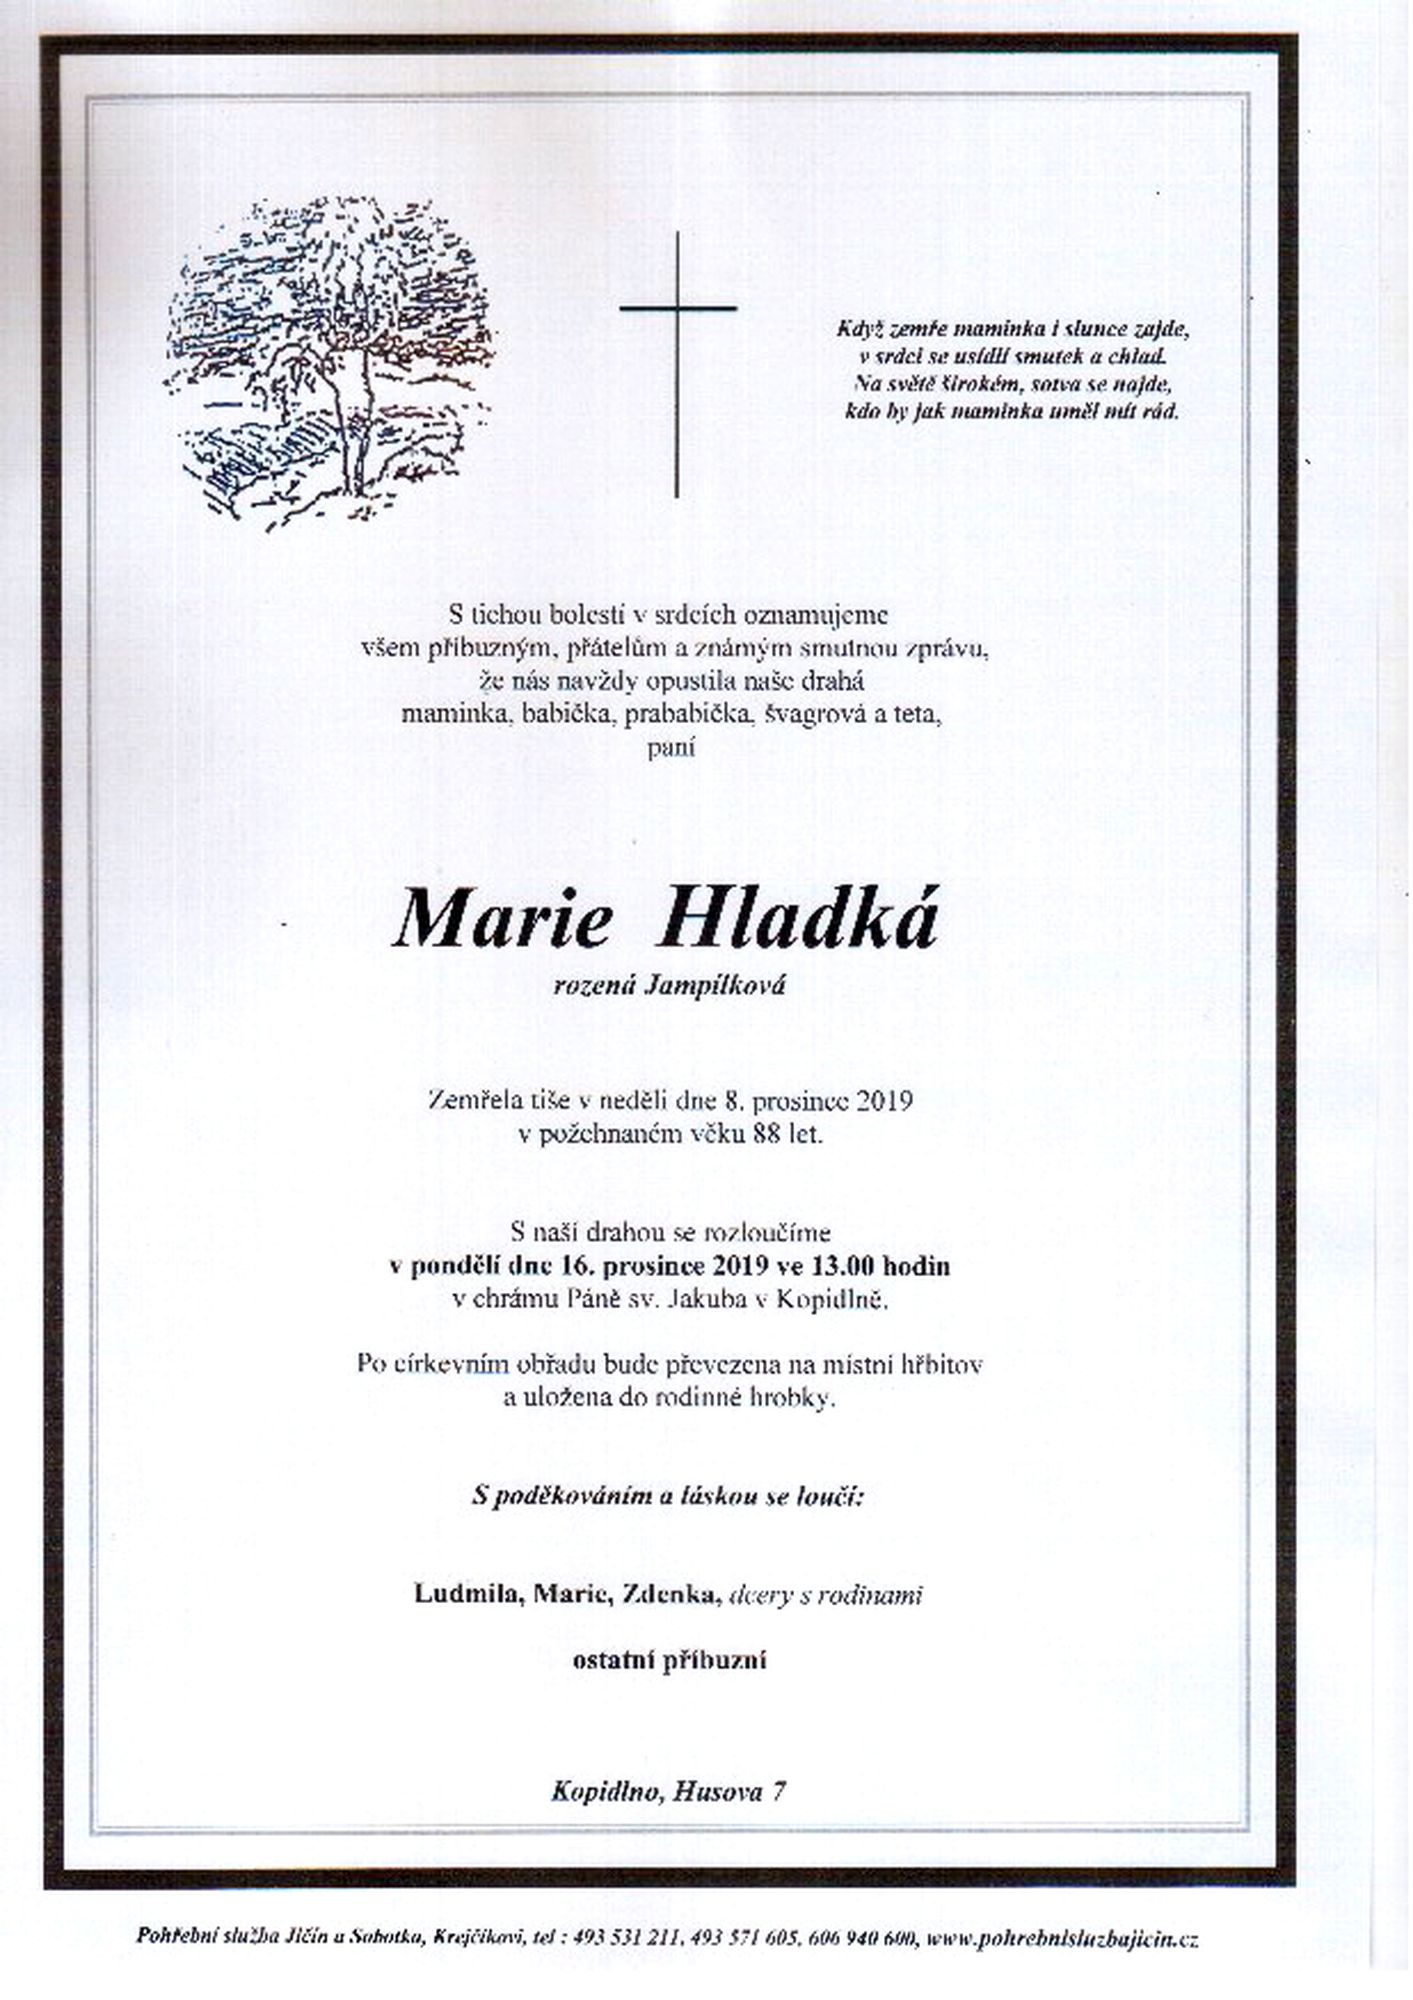 Marie Hladká